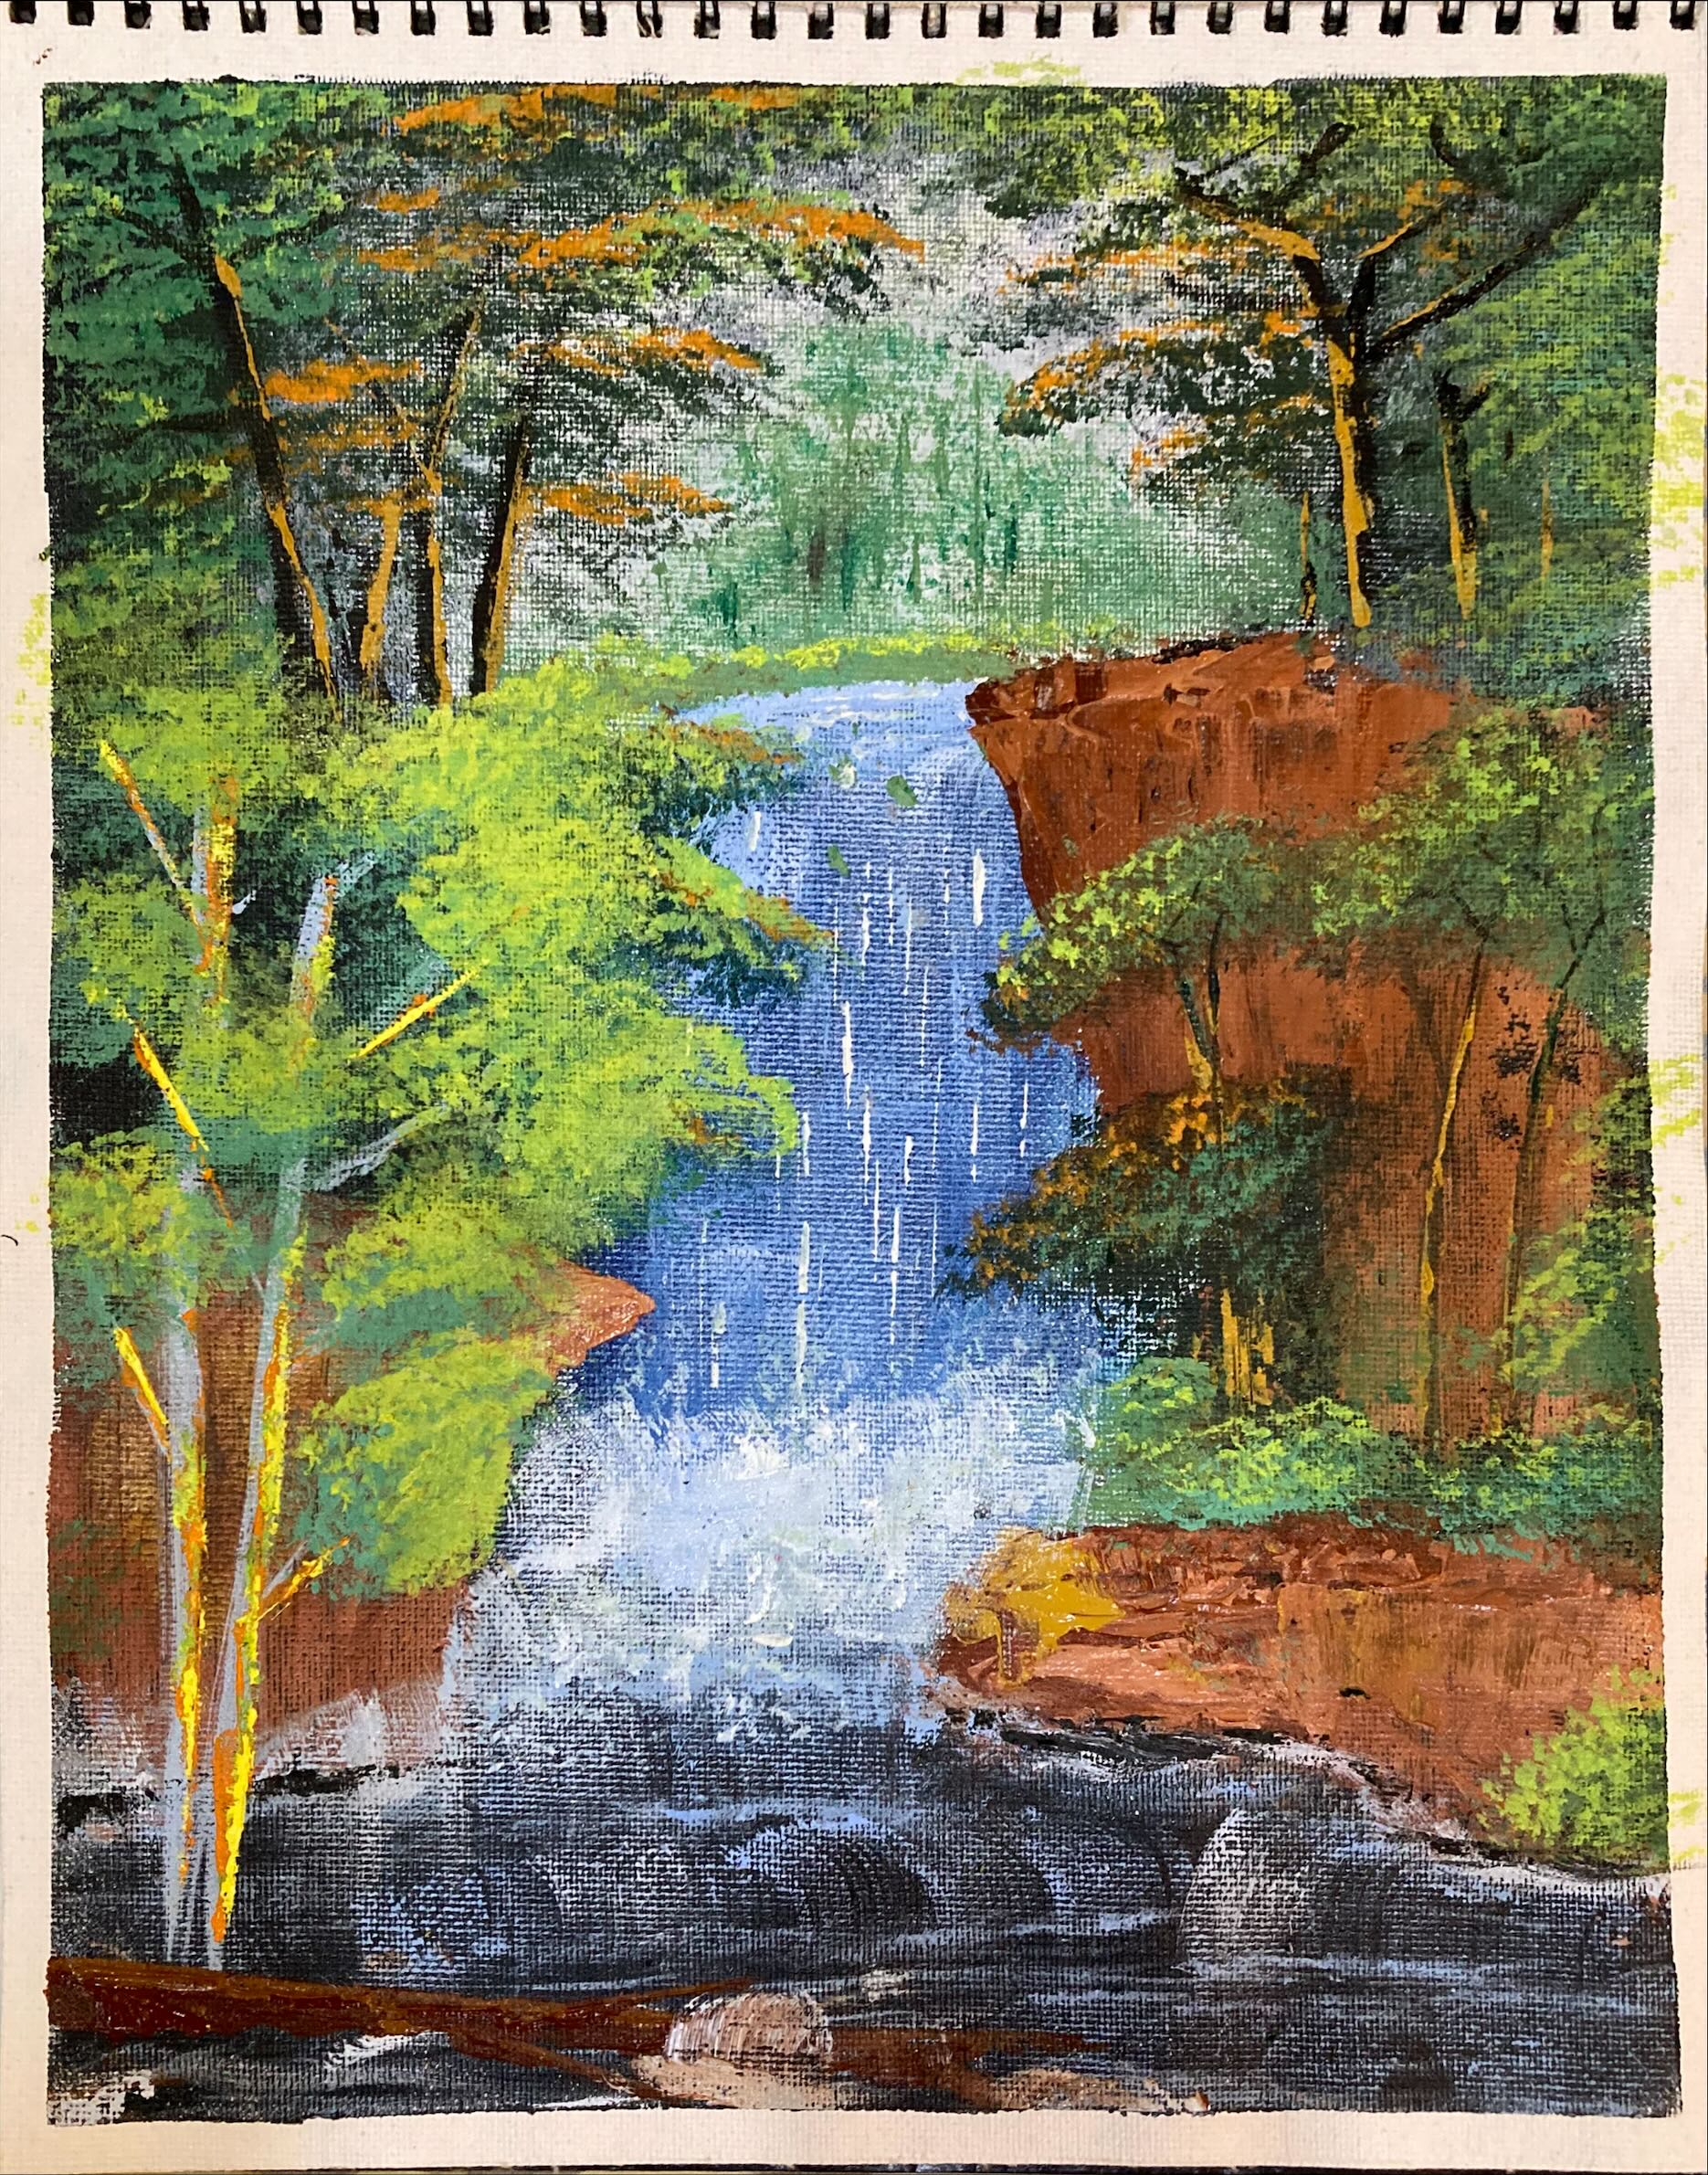 Graceful waterfall